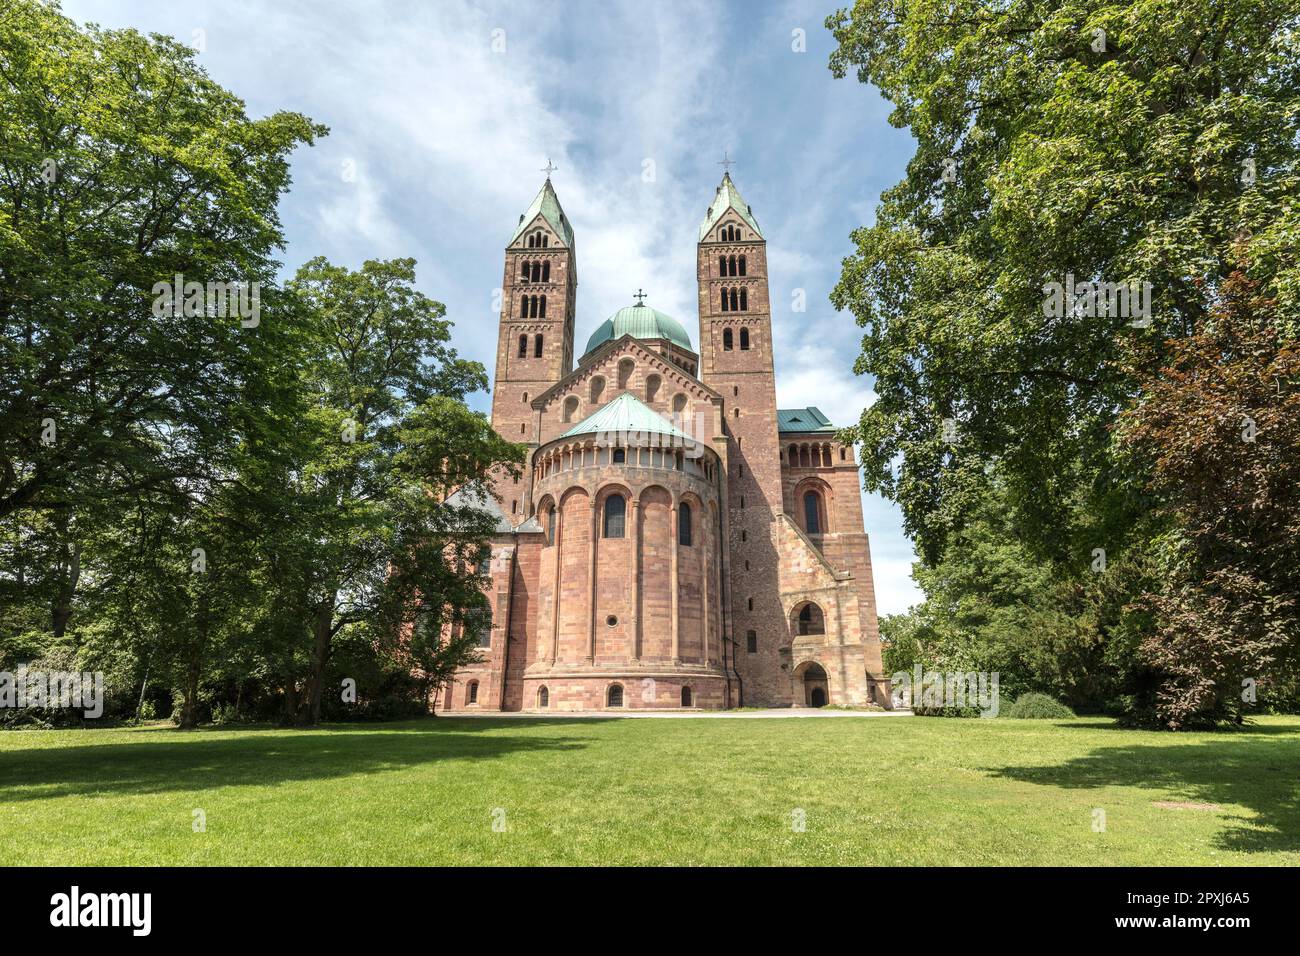 Cattedrale di Speyer (dom) o Cattedrale Imperiale Basilica dell'assunzione e Santo Stefano, romanico dal 1061. Sito patrimonio dell'umanità dell'UNESCO. Speyer. Foto Stock